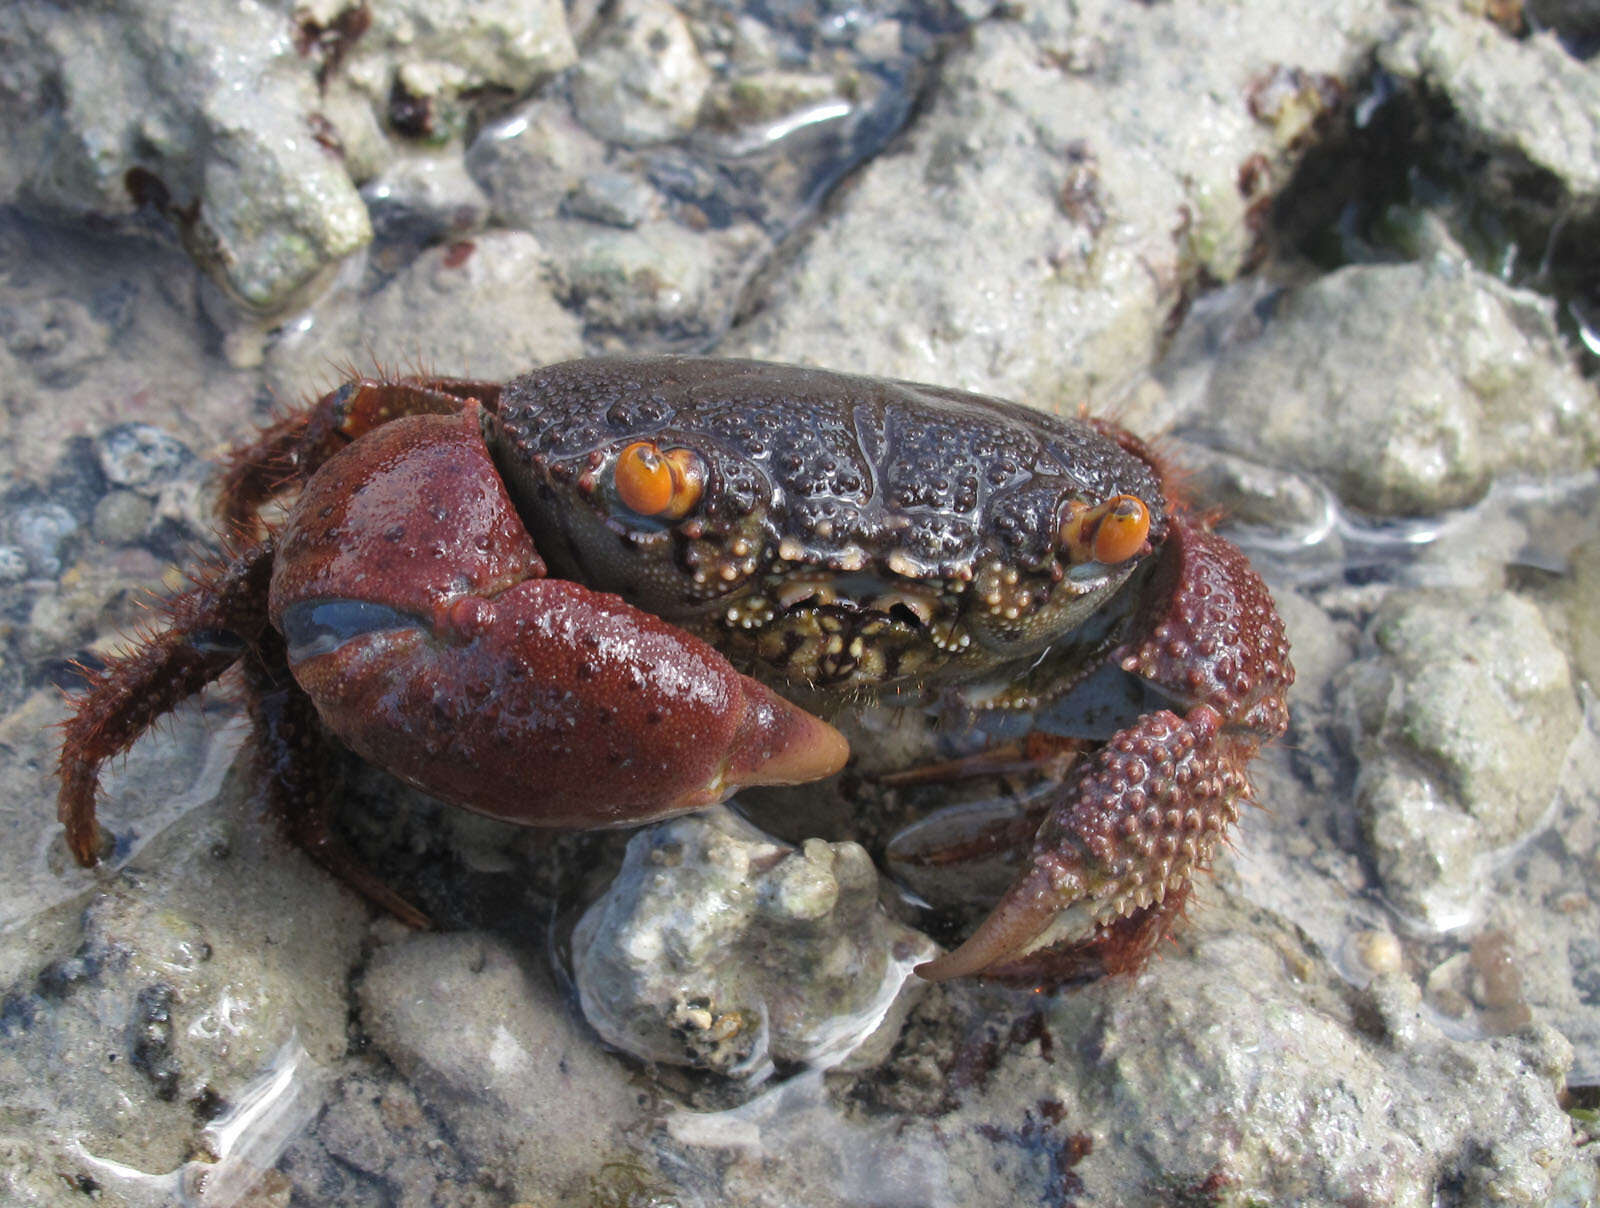 Image of rough redeye crab